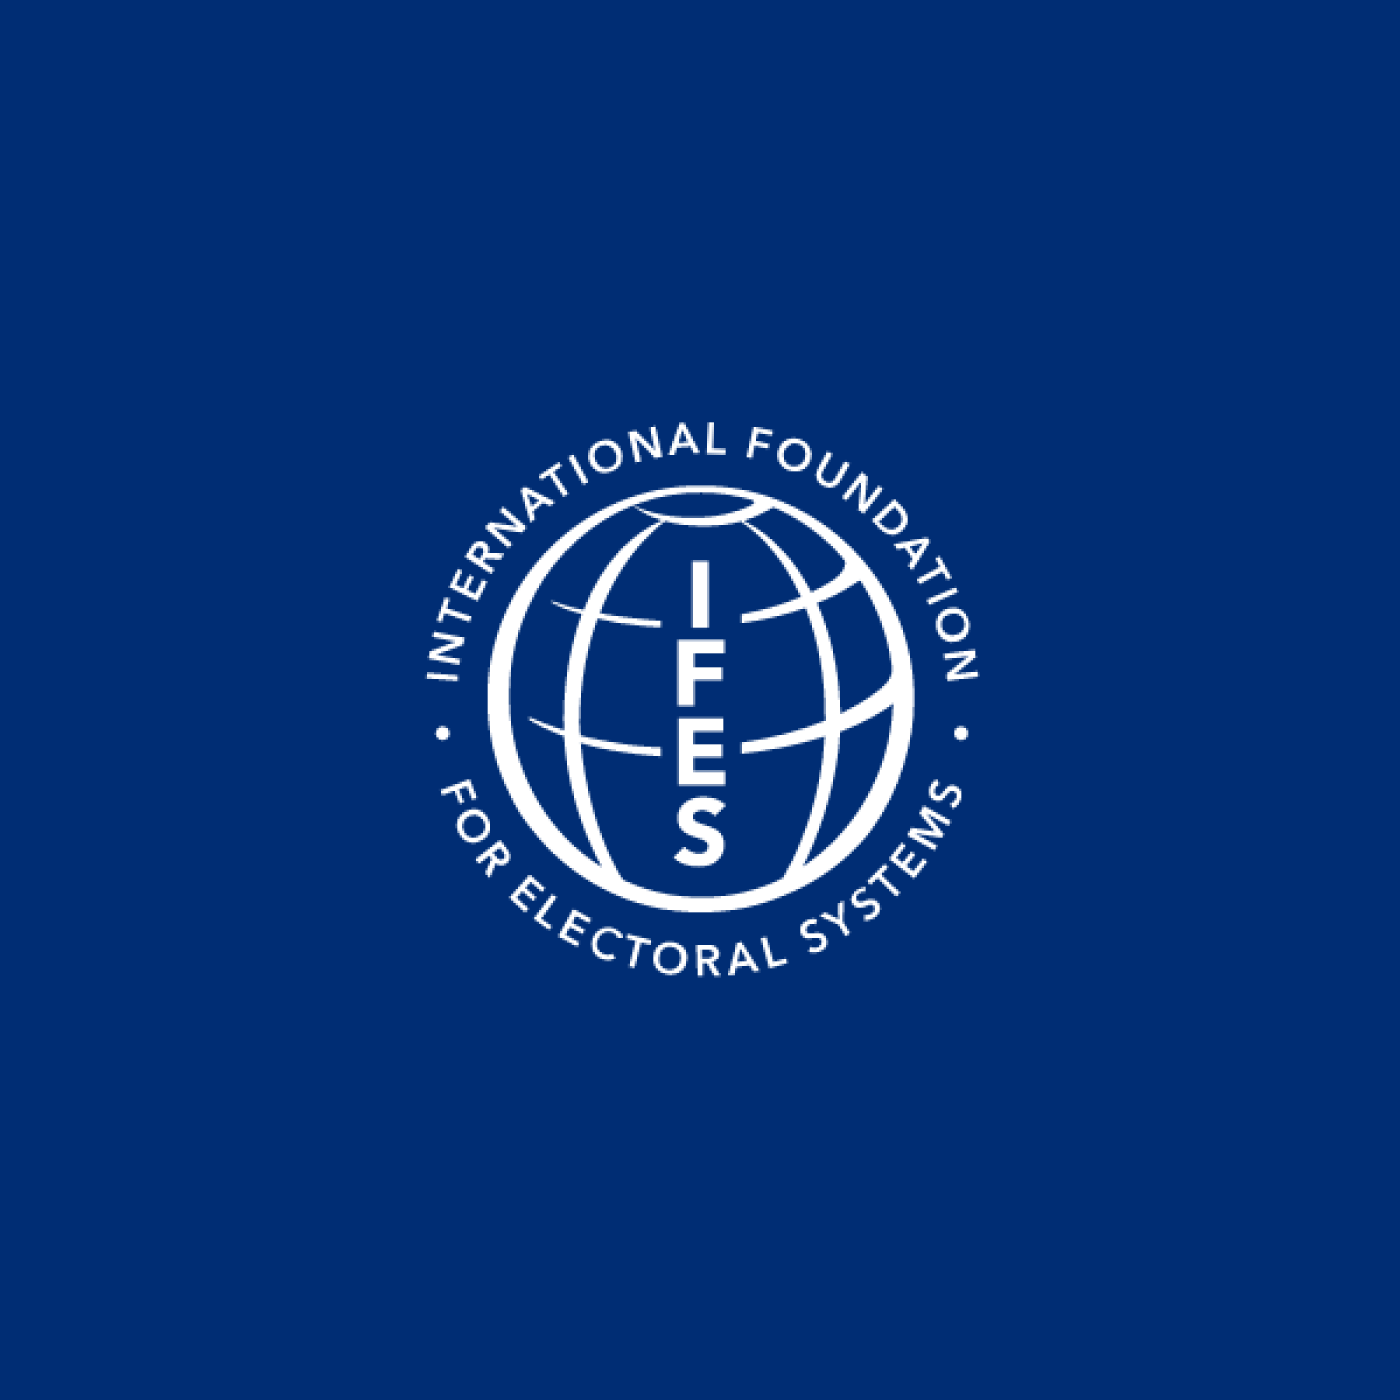 IFES logo blue background